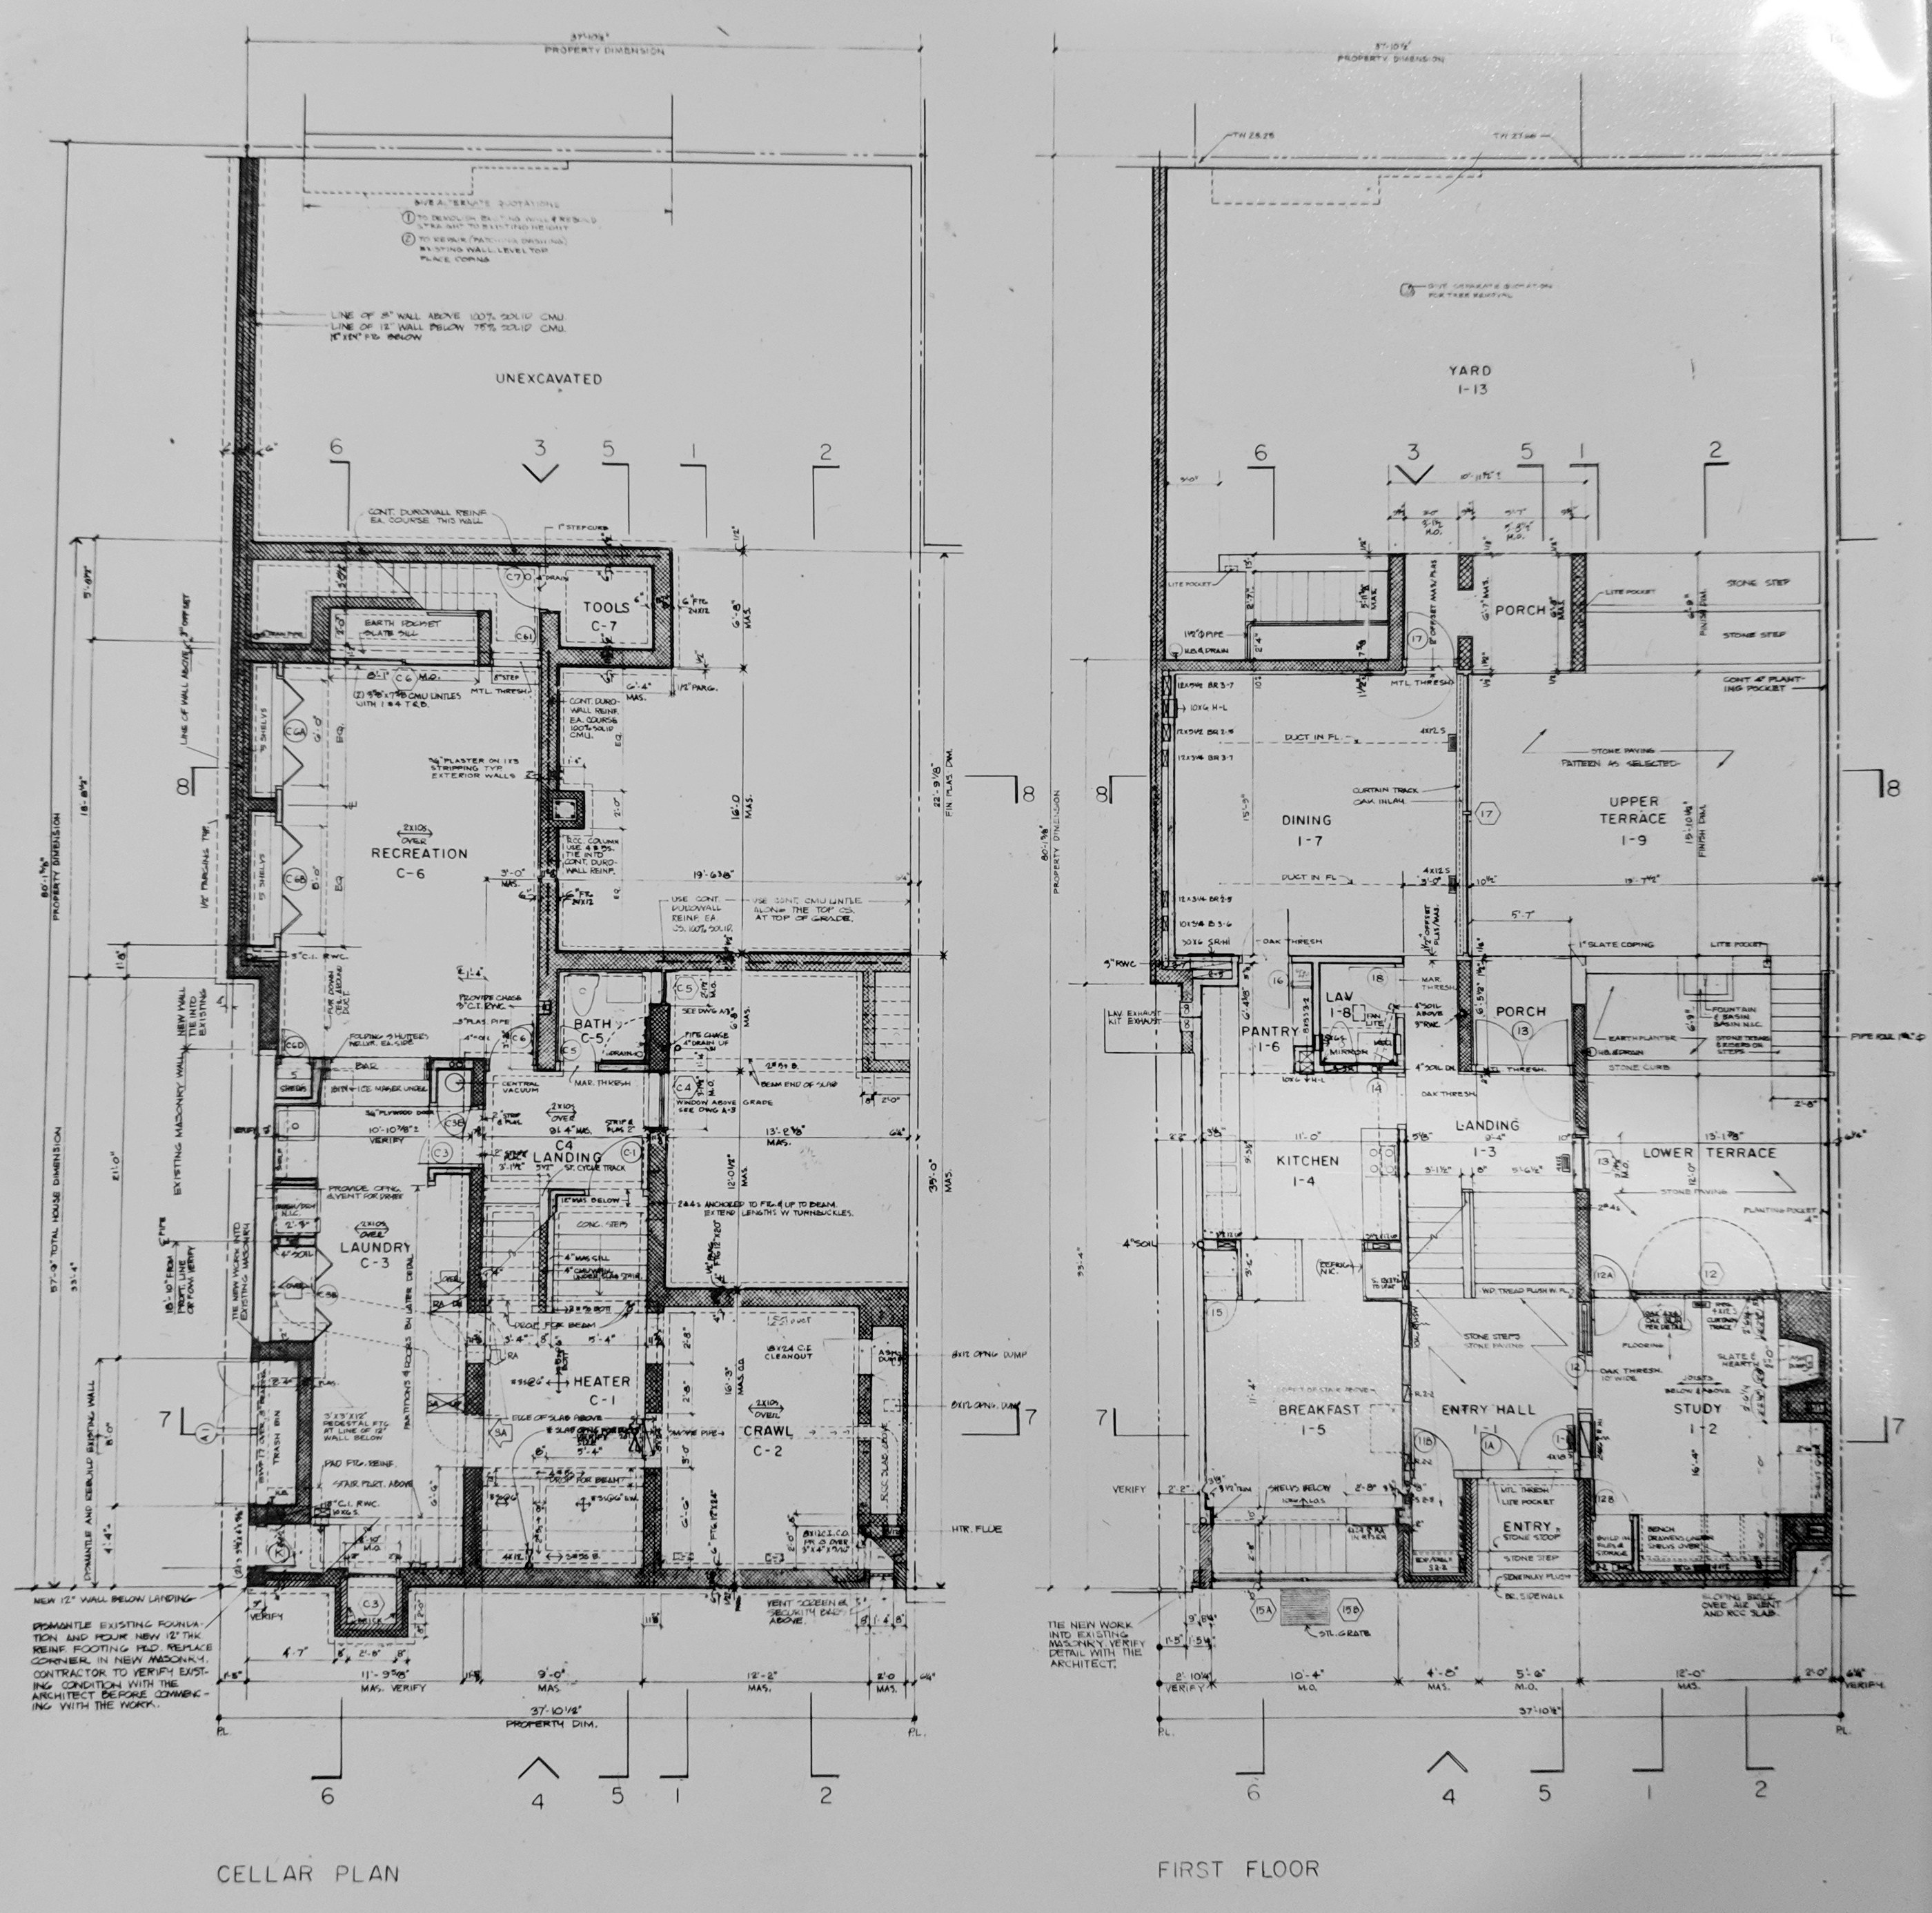 228-230 Delancey St - Cellar and First Floor Plan (1966)